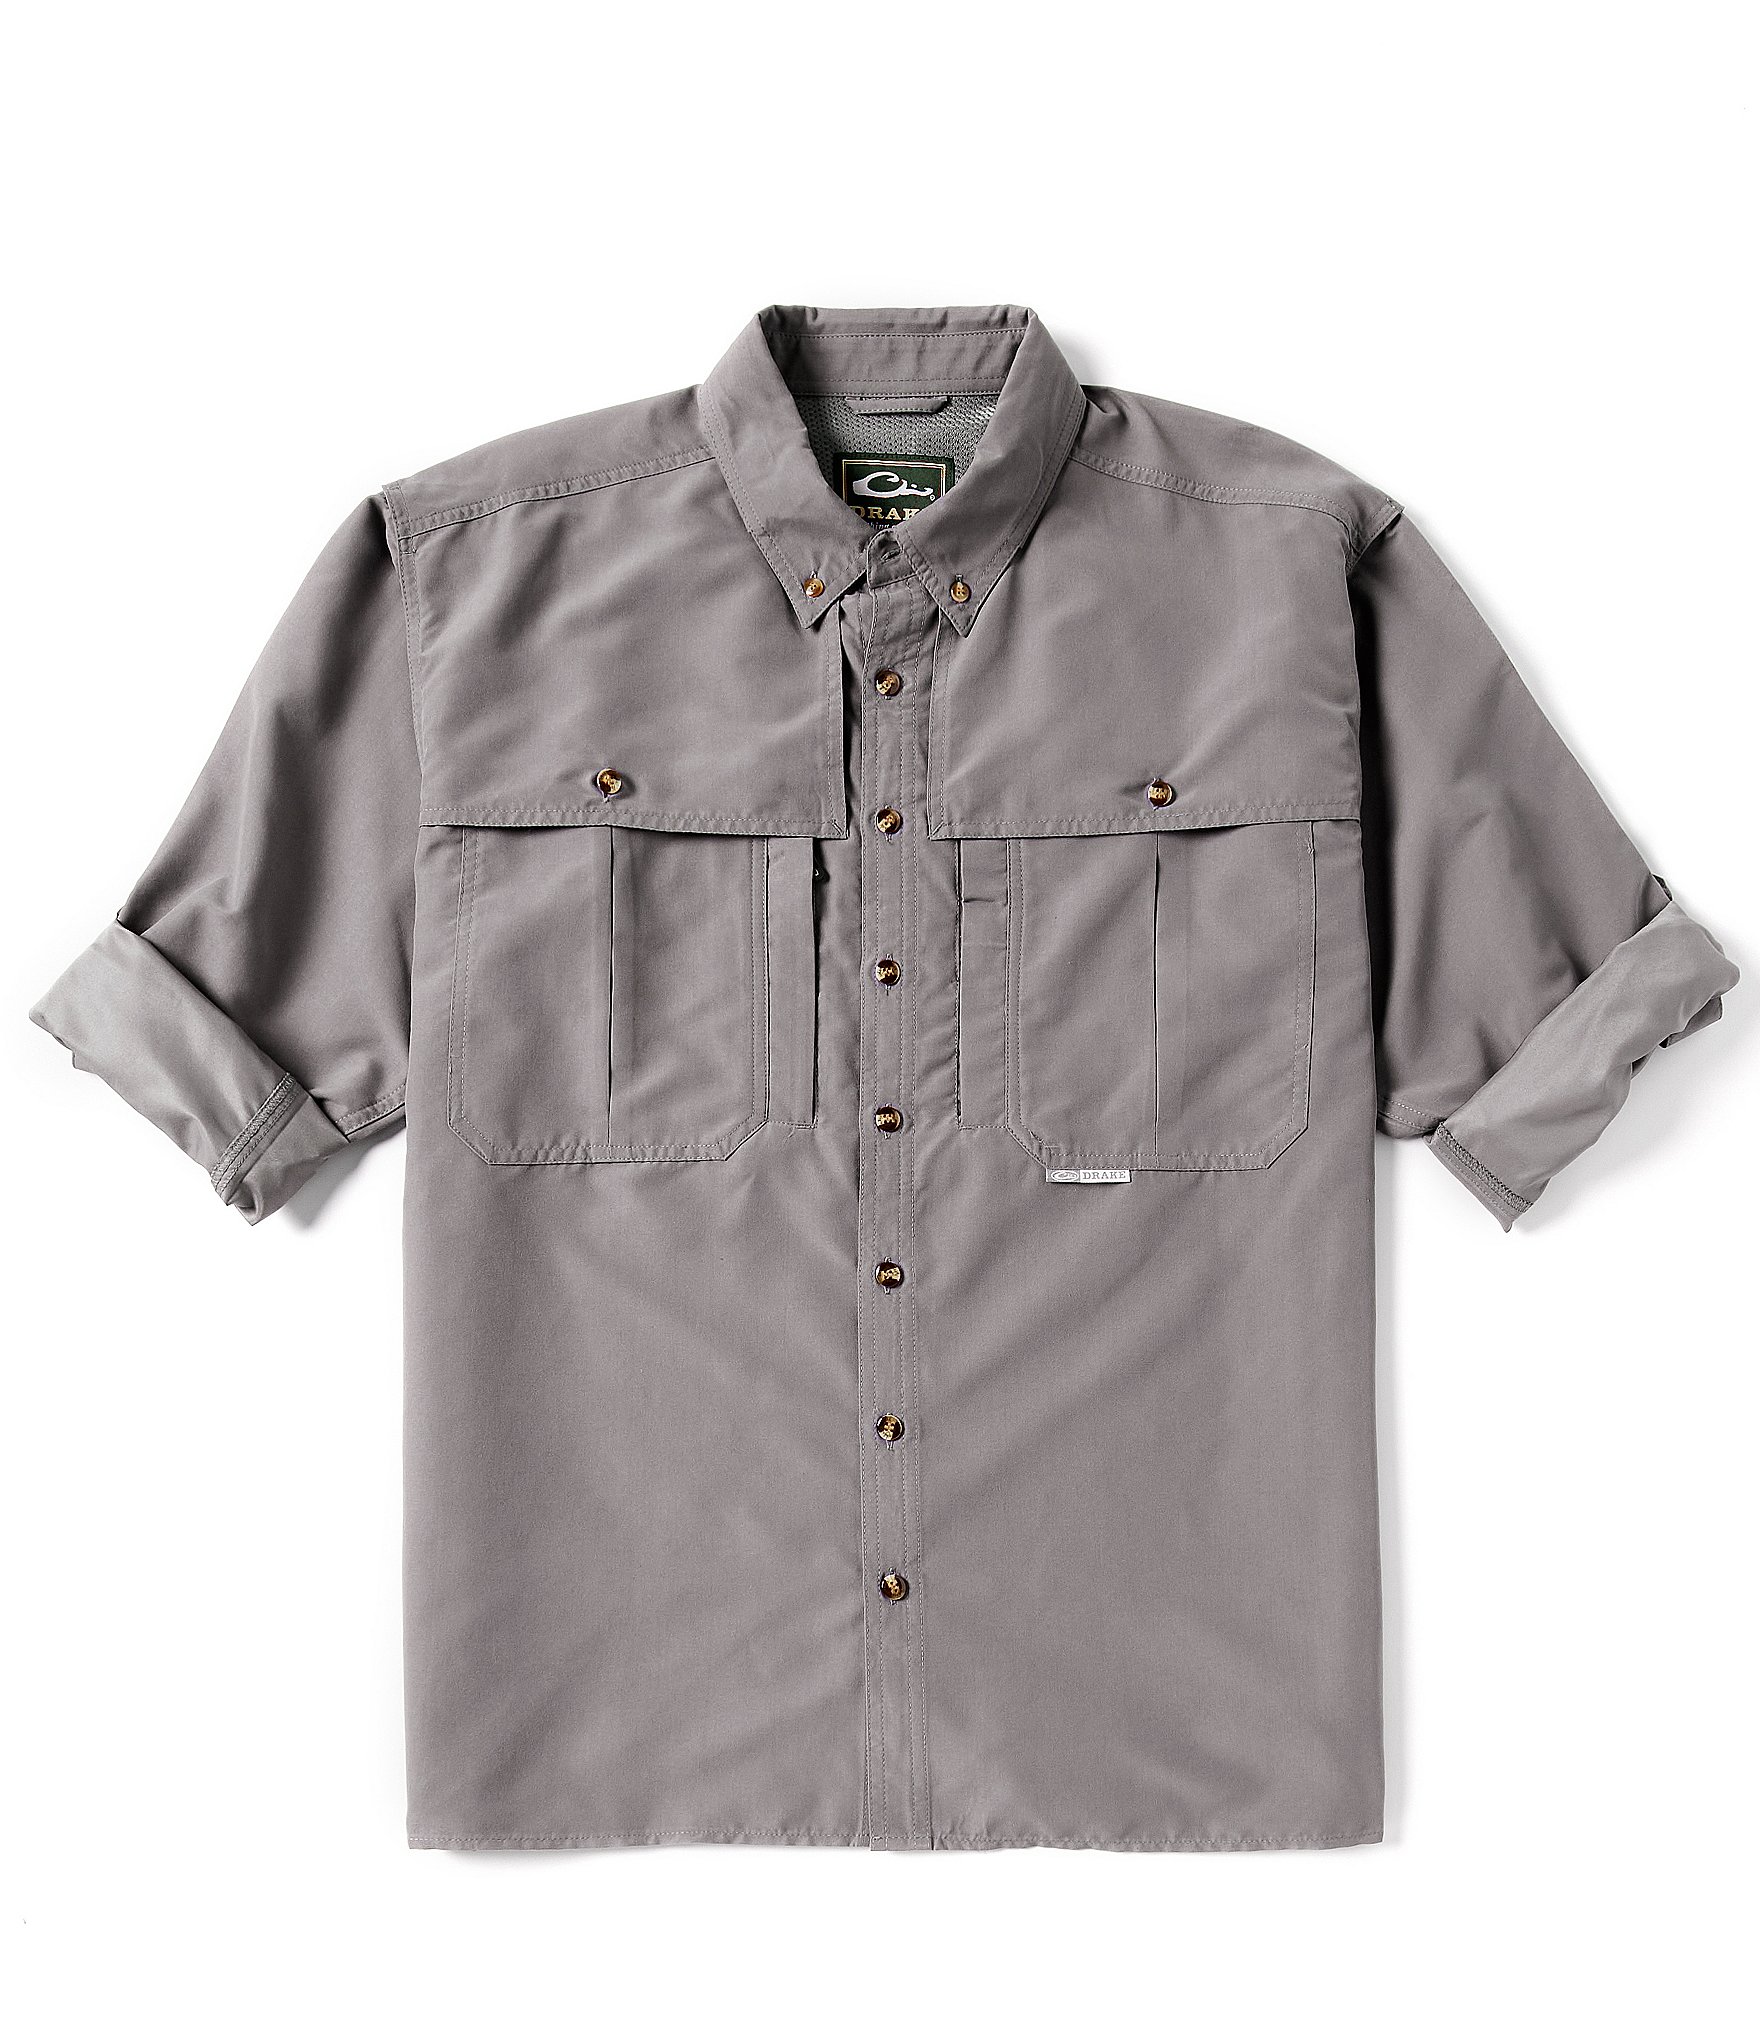 Drake Clothing Co. Men's Shirts